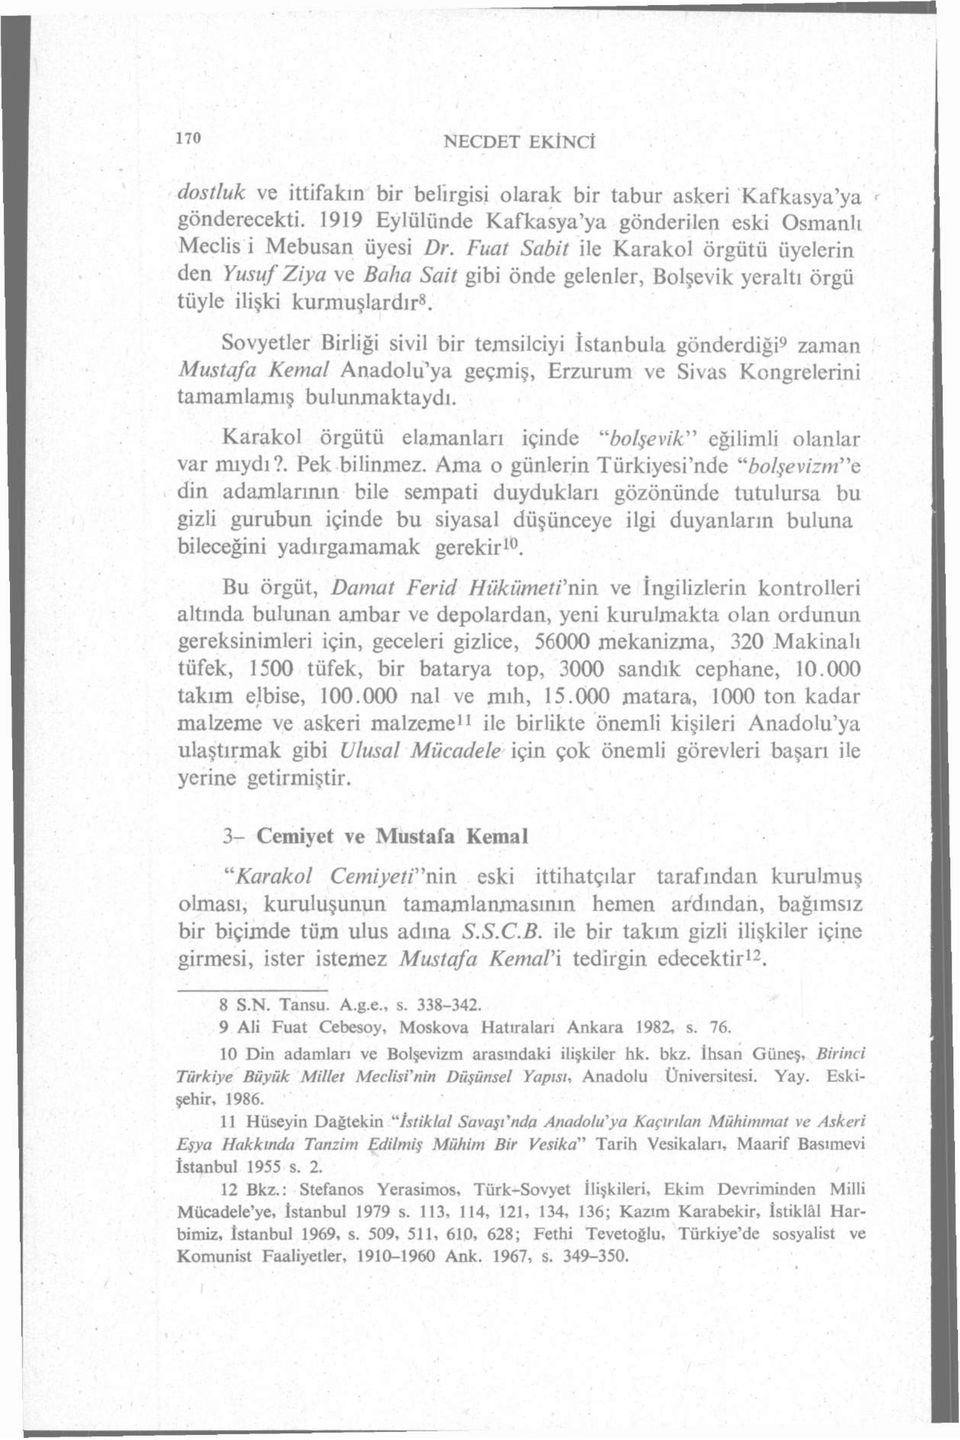 Sovyetler Birliği sivil bir temsilciyi Istanbula gönderdiği 9 zaman Mustafa Kemal Anadolu'ya geçmiş, Erzurum ve Sivas Kongrelerini tamamlamış bulunmaktaydı.